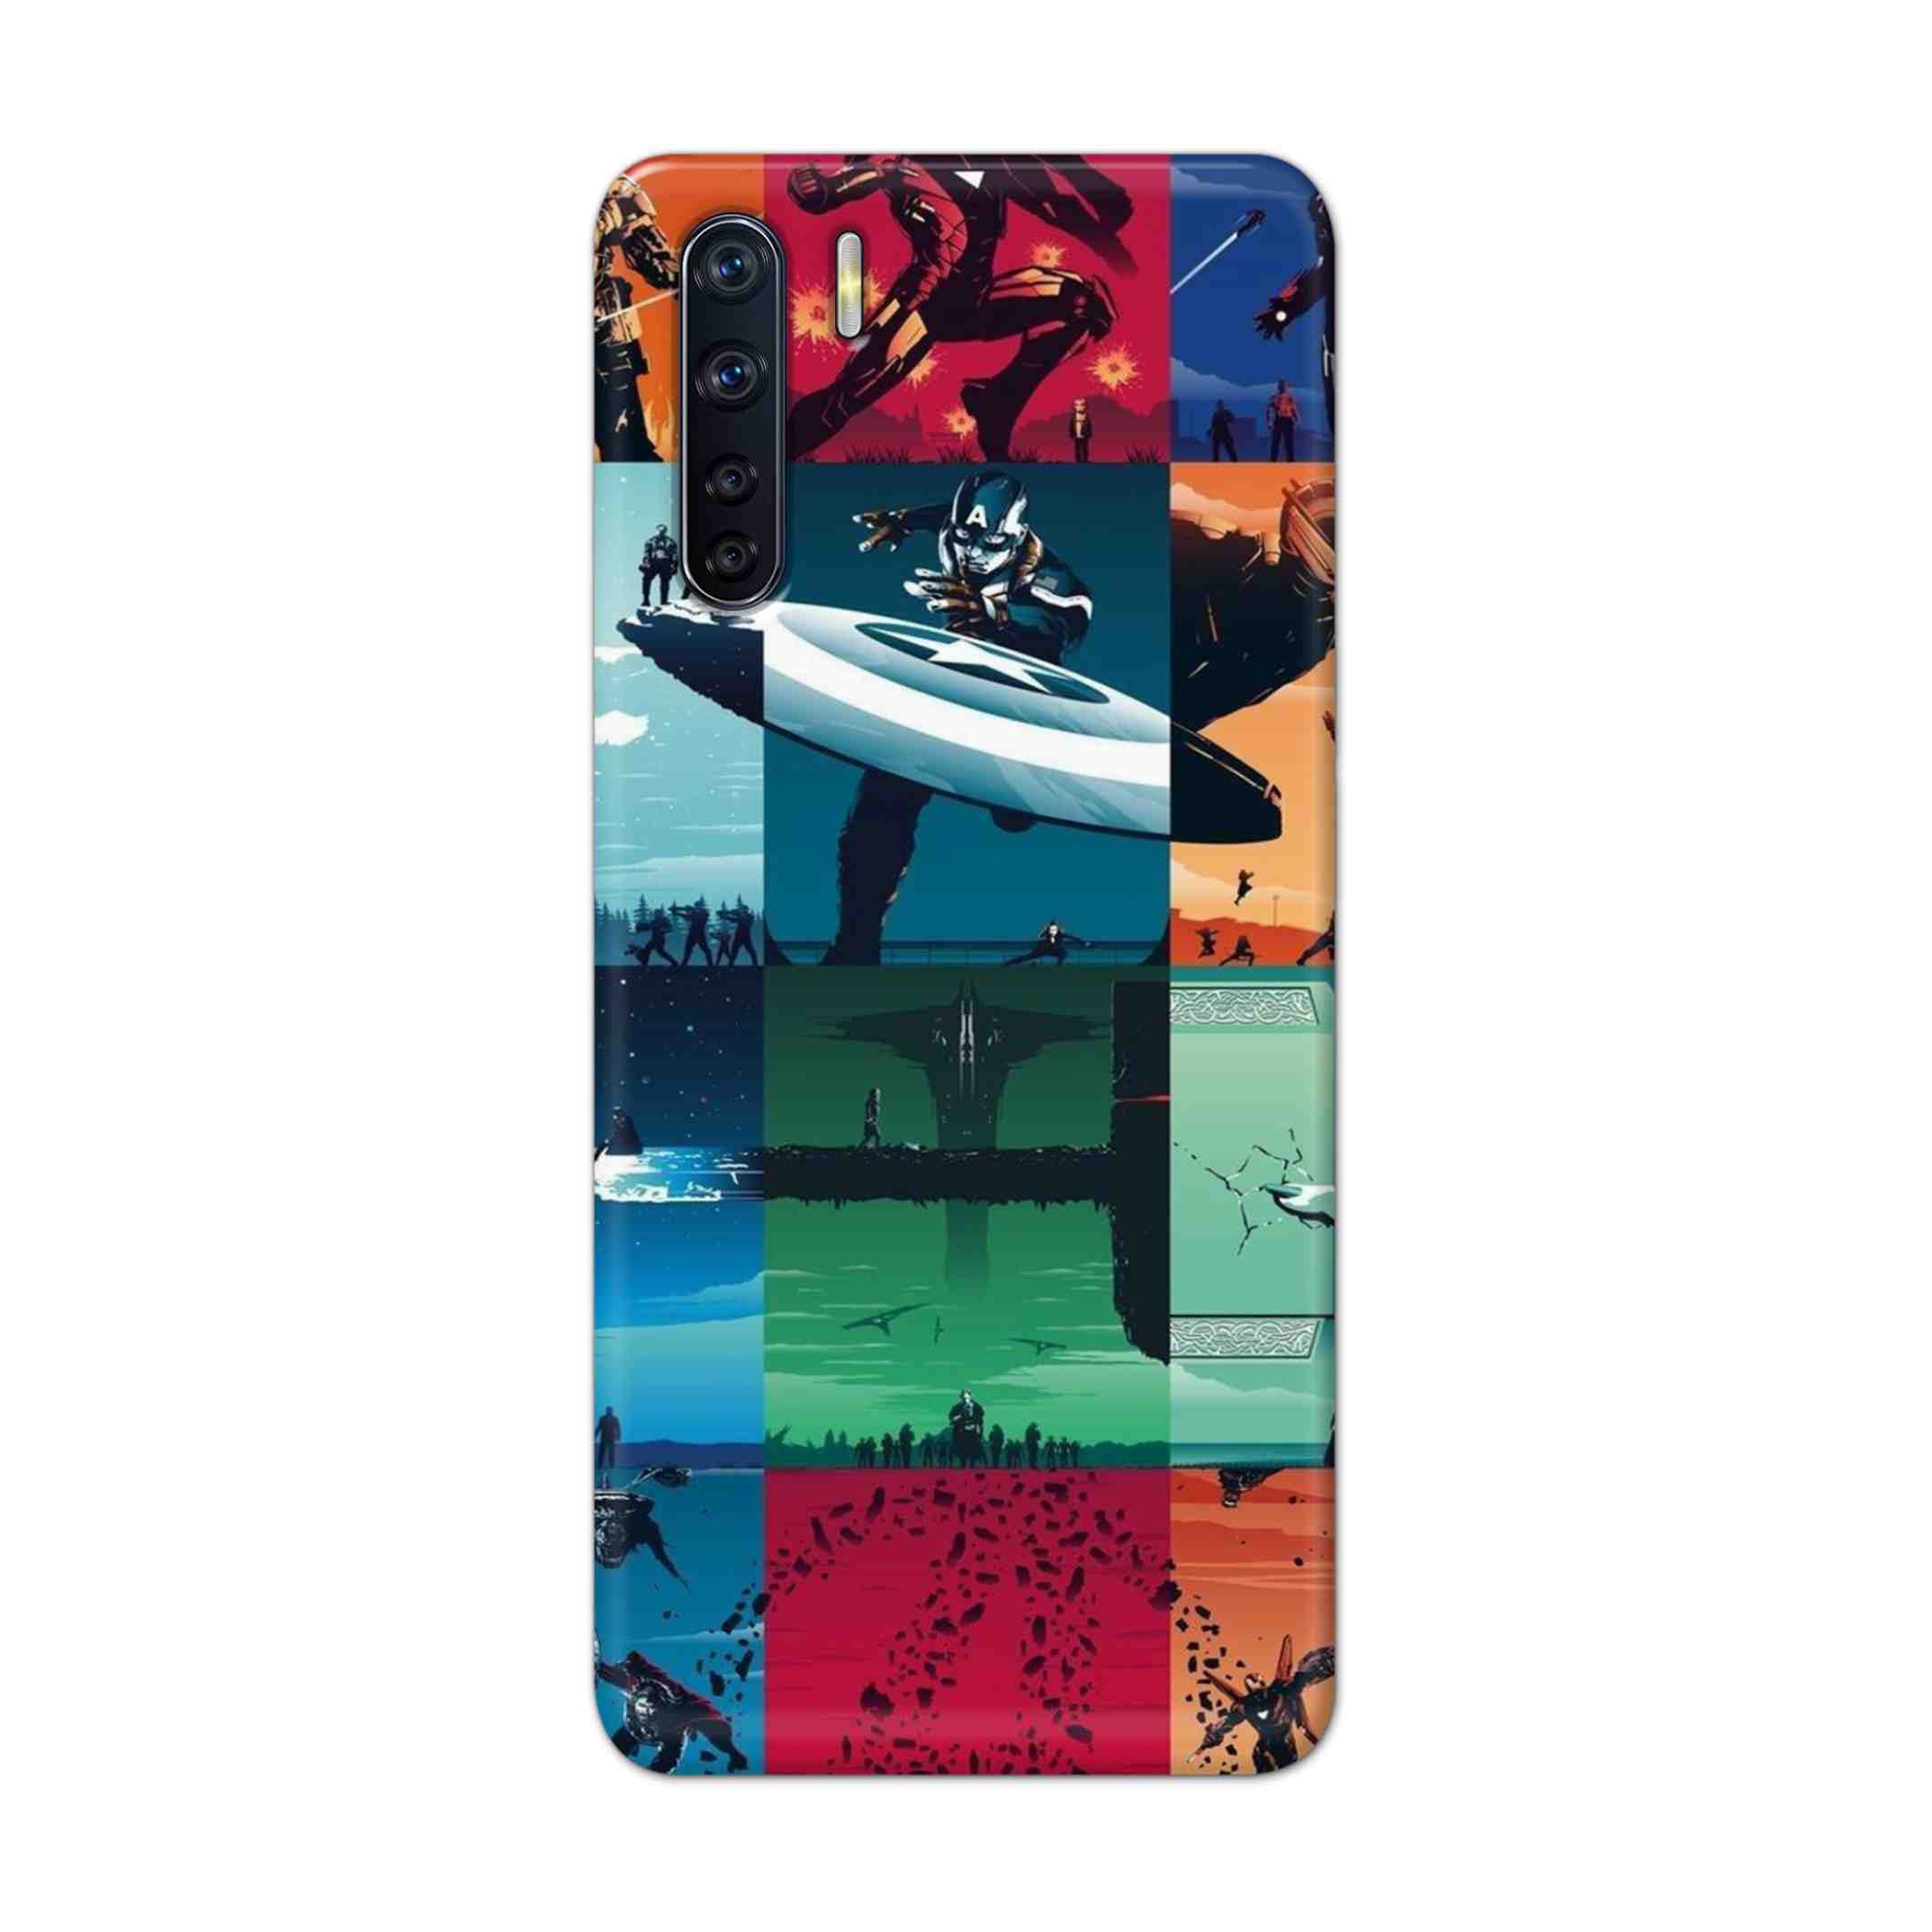 Buy Avengers Team Hard Back Mobile Phone Case Cover For OPPO F15 Online